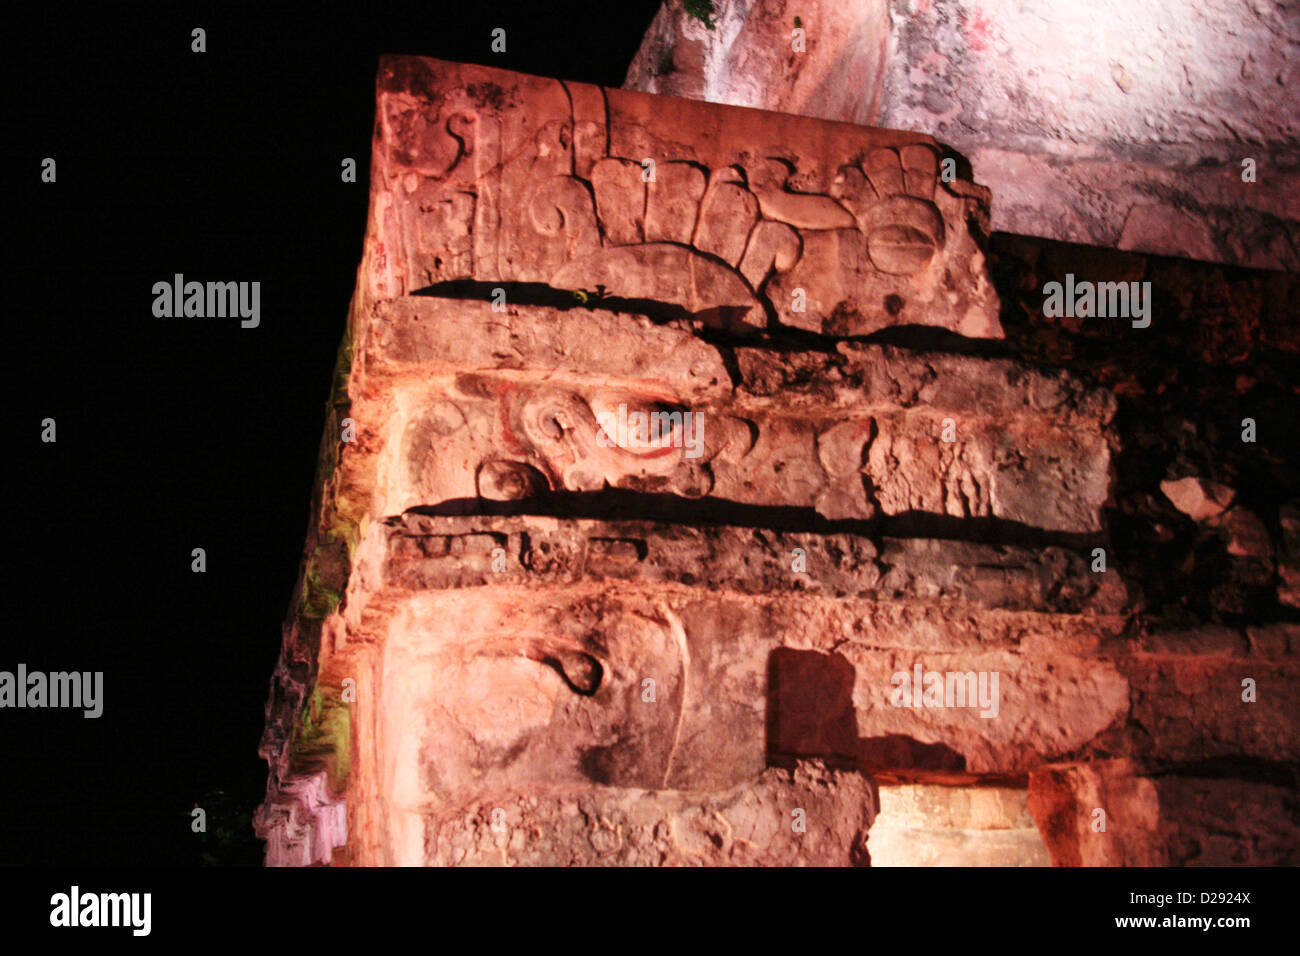 Le rovine maya di Tulum a notte. Messico Foto Stock